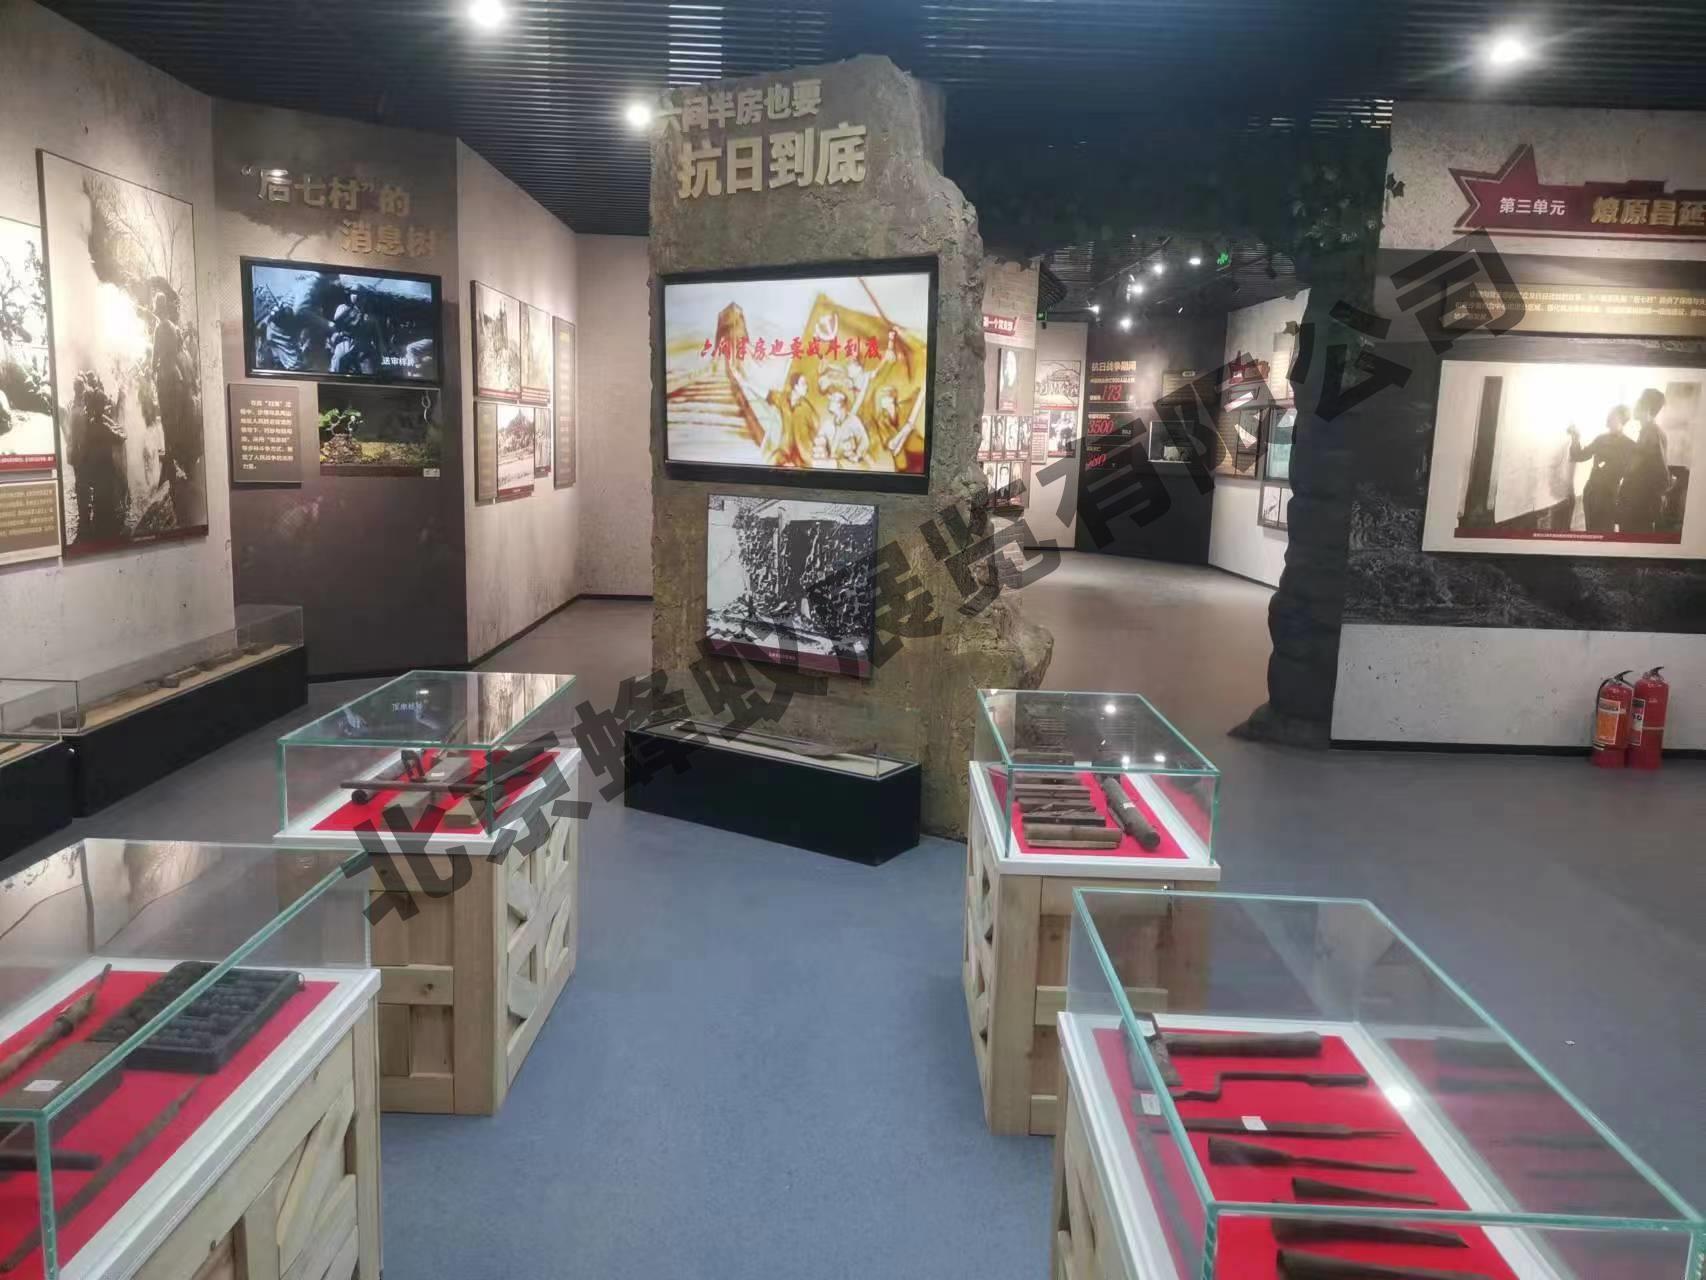 平北红色第一村纪念馆-北京蜂蚁展览有限公司